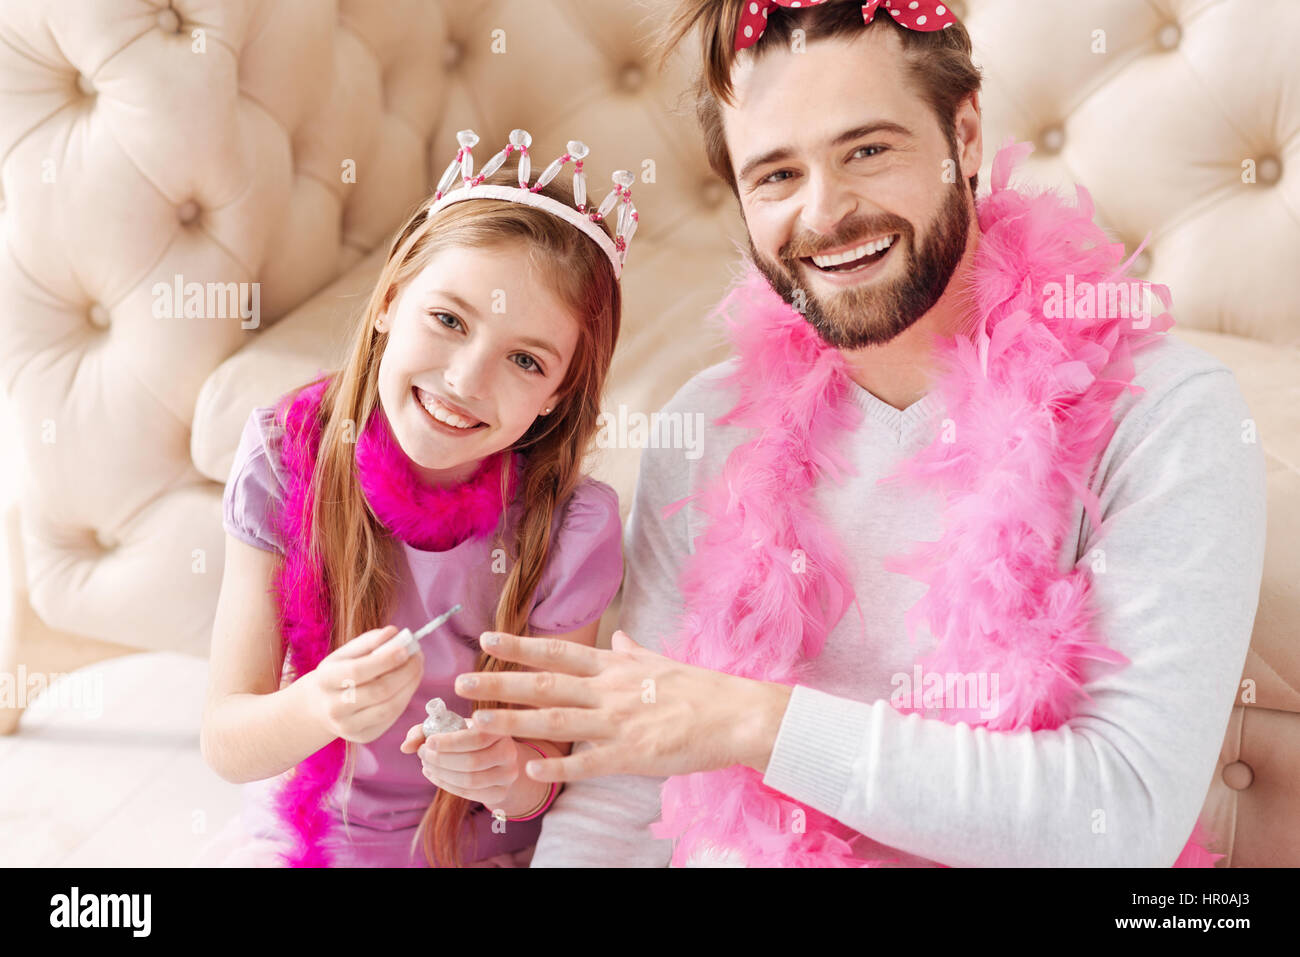 Essere di buon umore. Sorridente ragazza di colore rosa che indossa la corona sul suo capo azienda Spazzola per unghie nella mano destra mentre si posa su telecamera Foto Stock